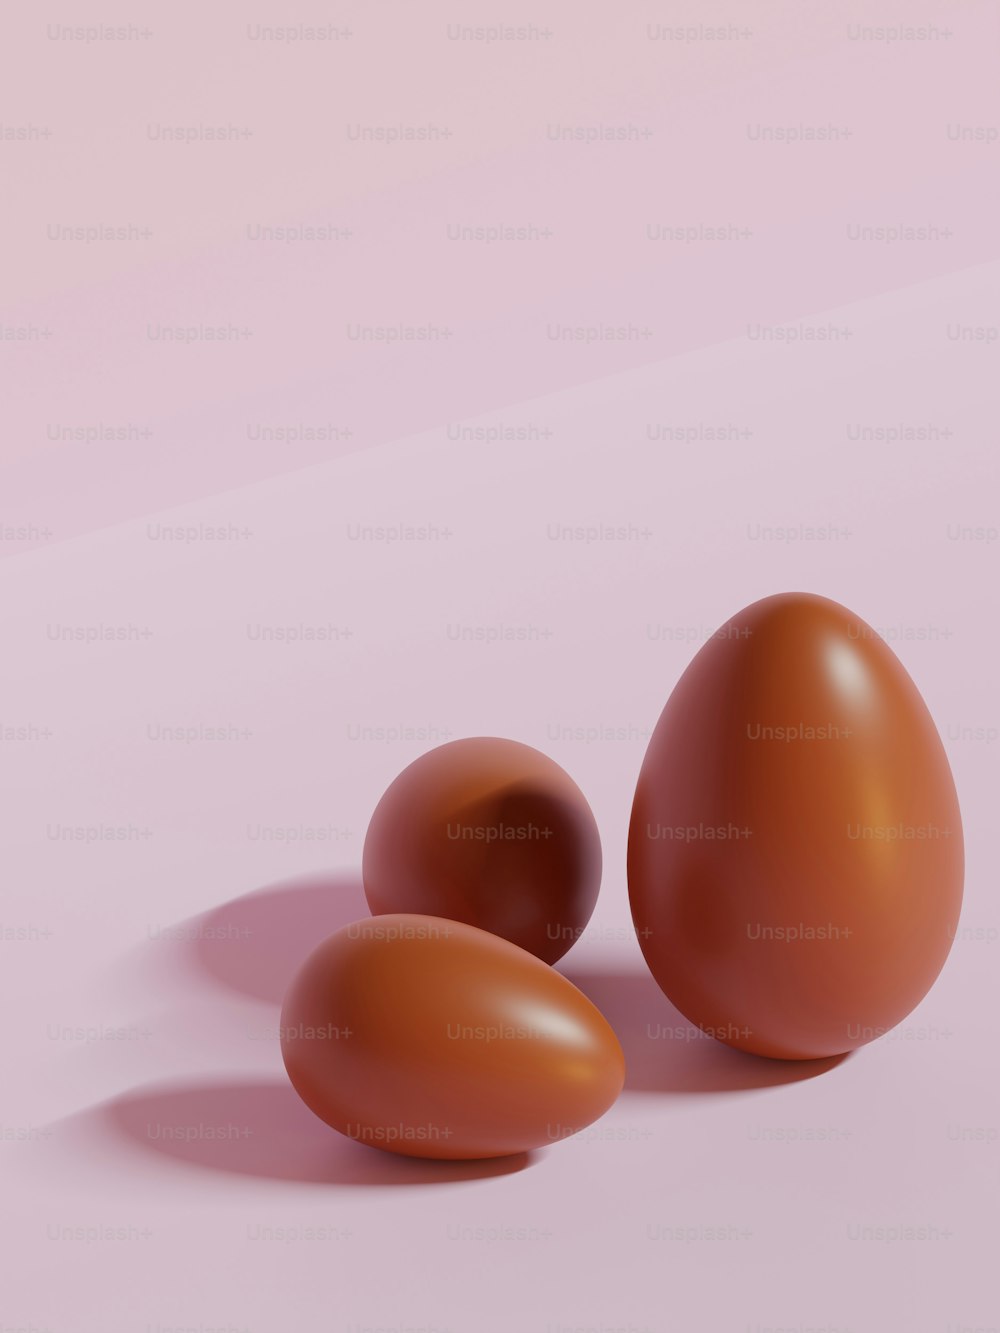 분홍색 배경에 세 개의 갈색 달걀